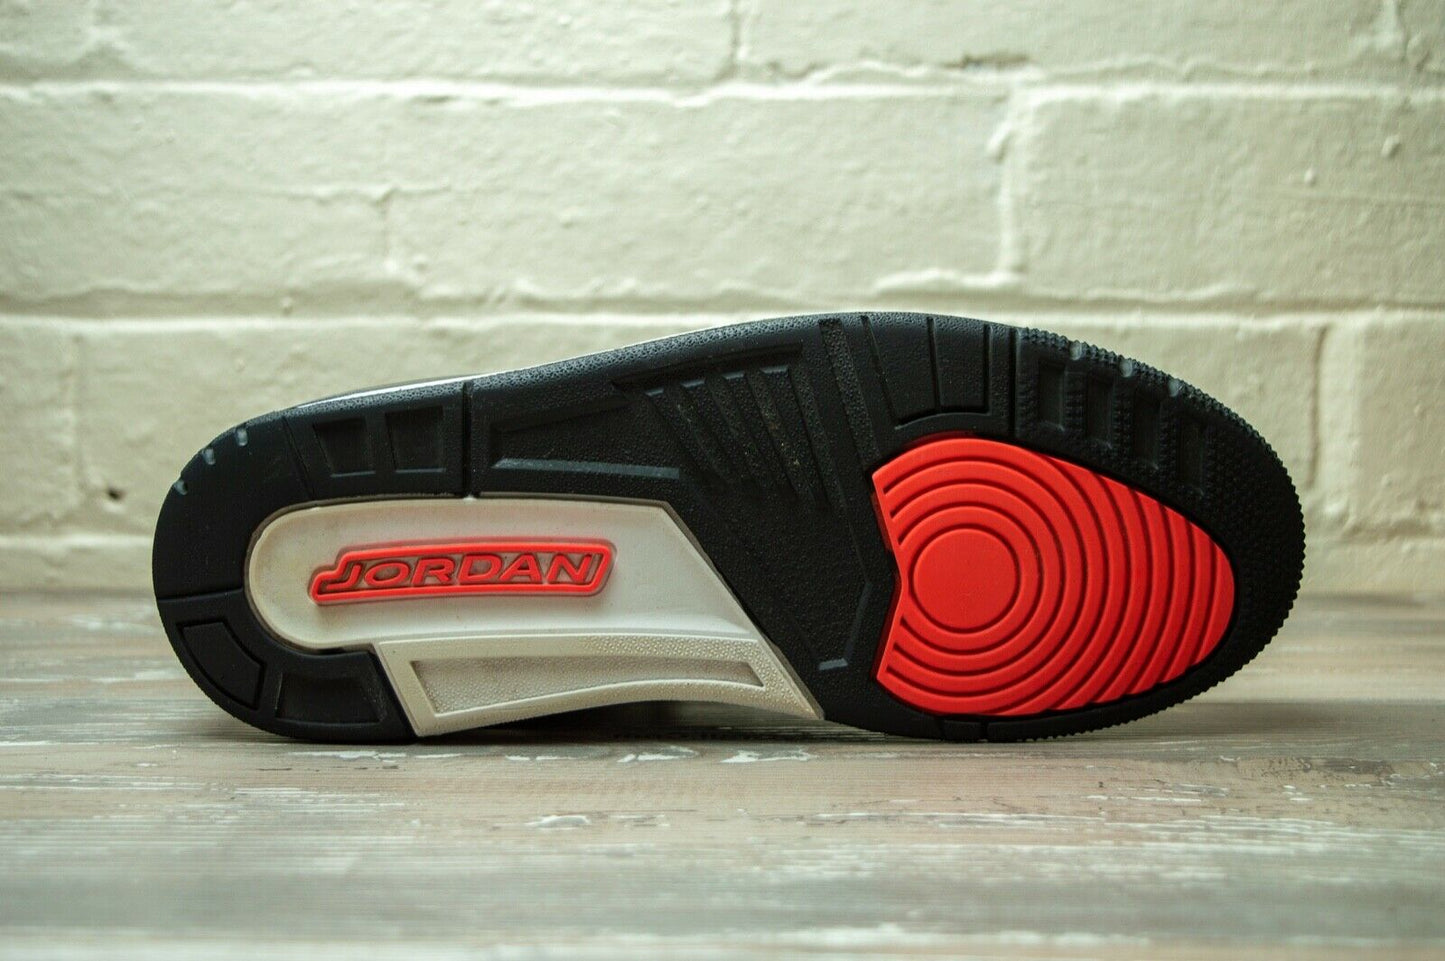 Nike Air Jordan 3 Retro Infrared 23 136064 123 -Nike Air Jordan 3 Retro Infrared 23 136064 123 -